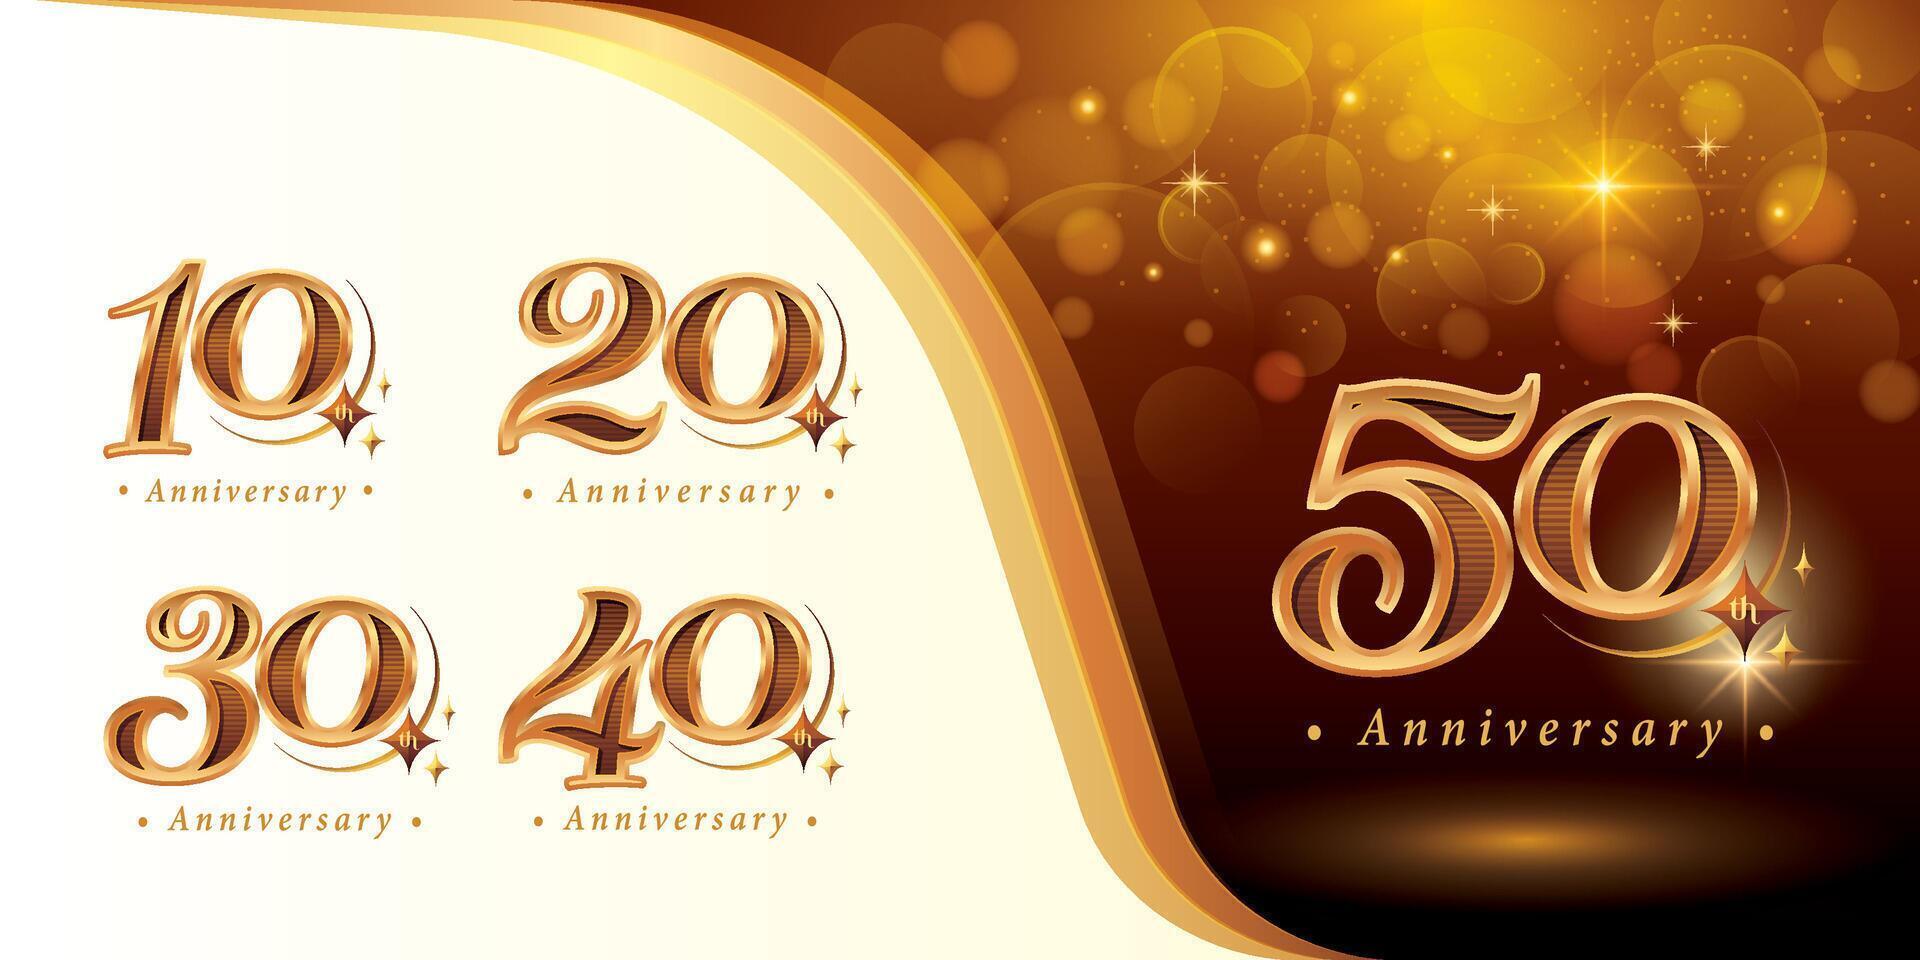 einstellen von 10 zu 50 Jahre Jahrestag Logo Design, zehn zu fünfzig Jahre feiern Jahrestag Logo, Luxus golden elegant klassisch Logo mit Star vektor